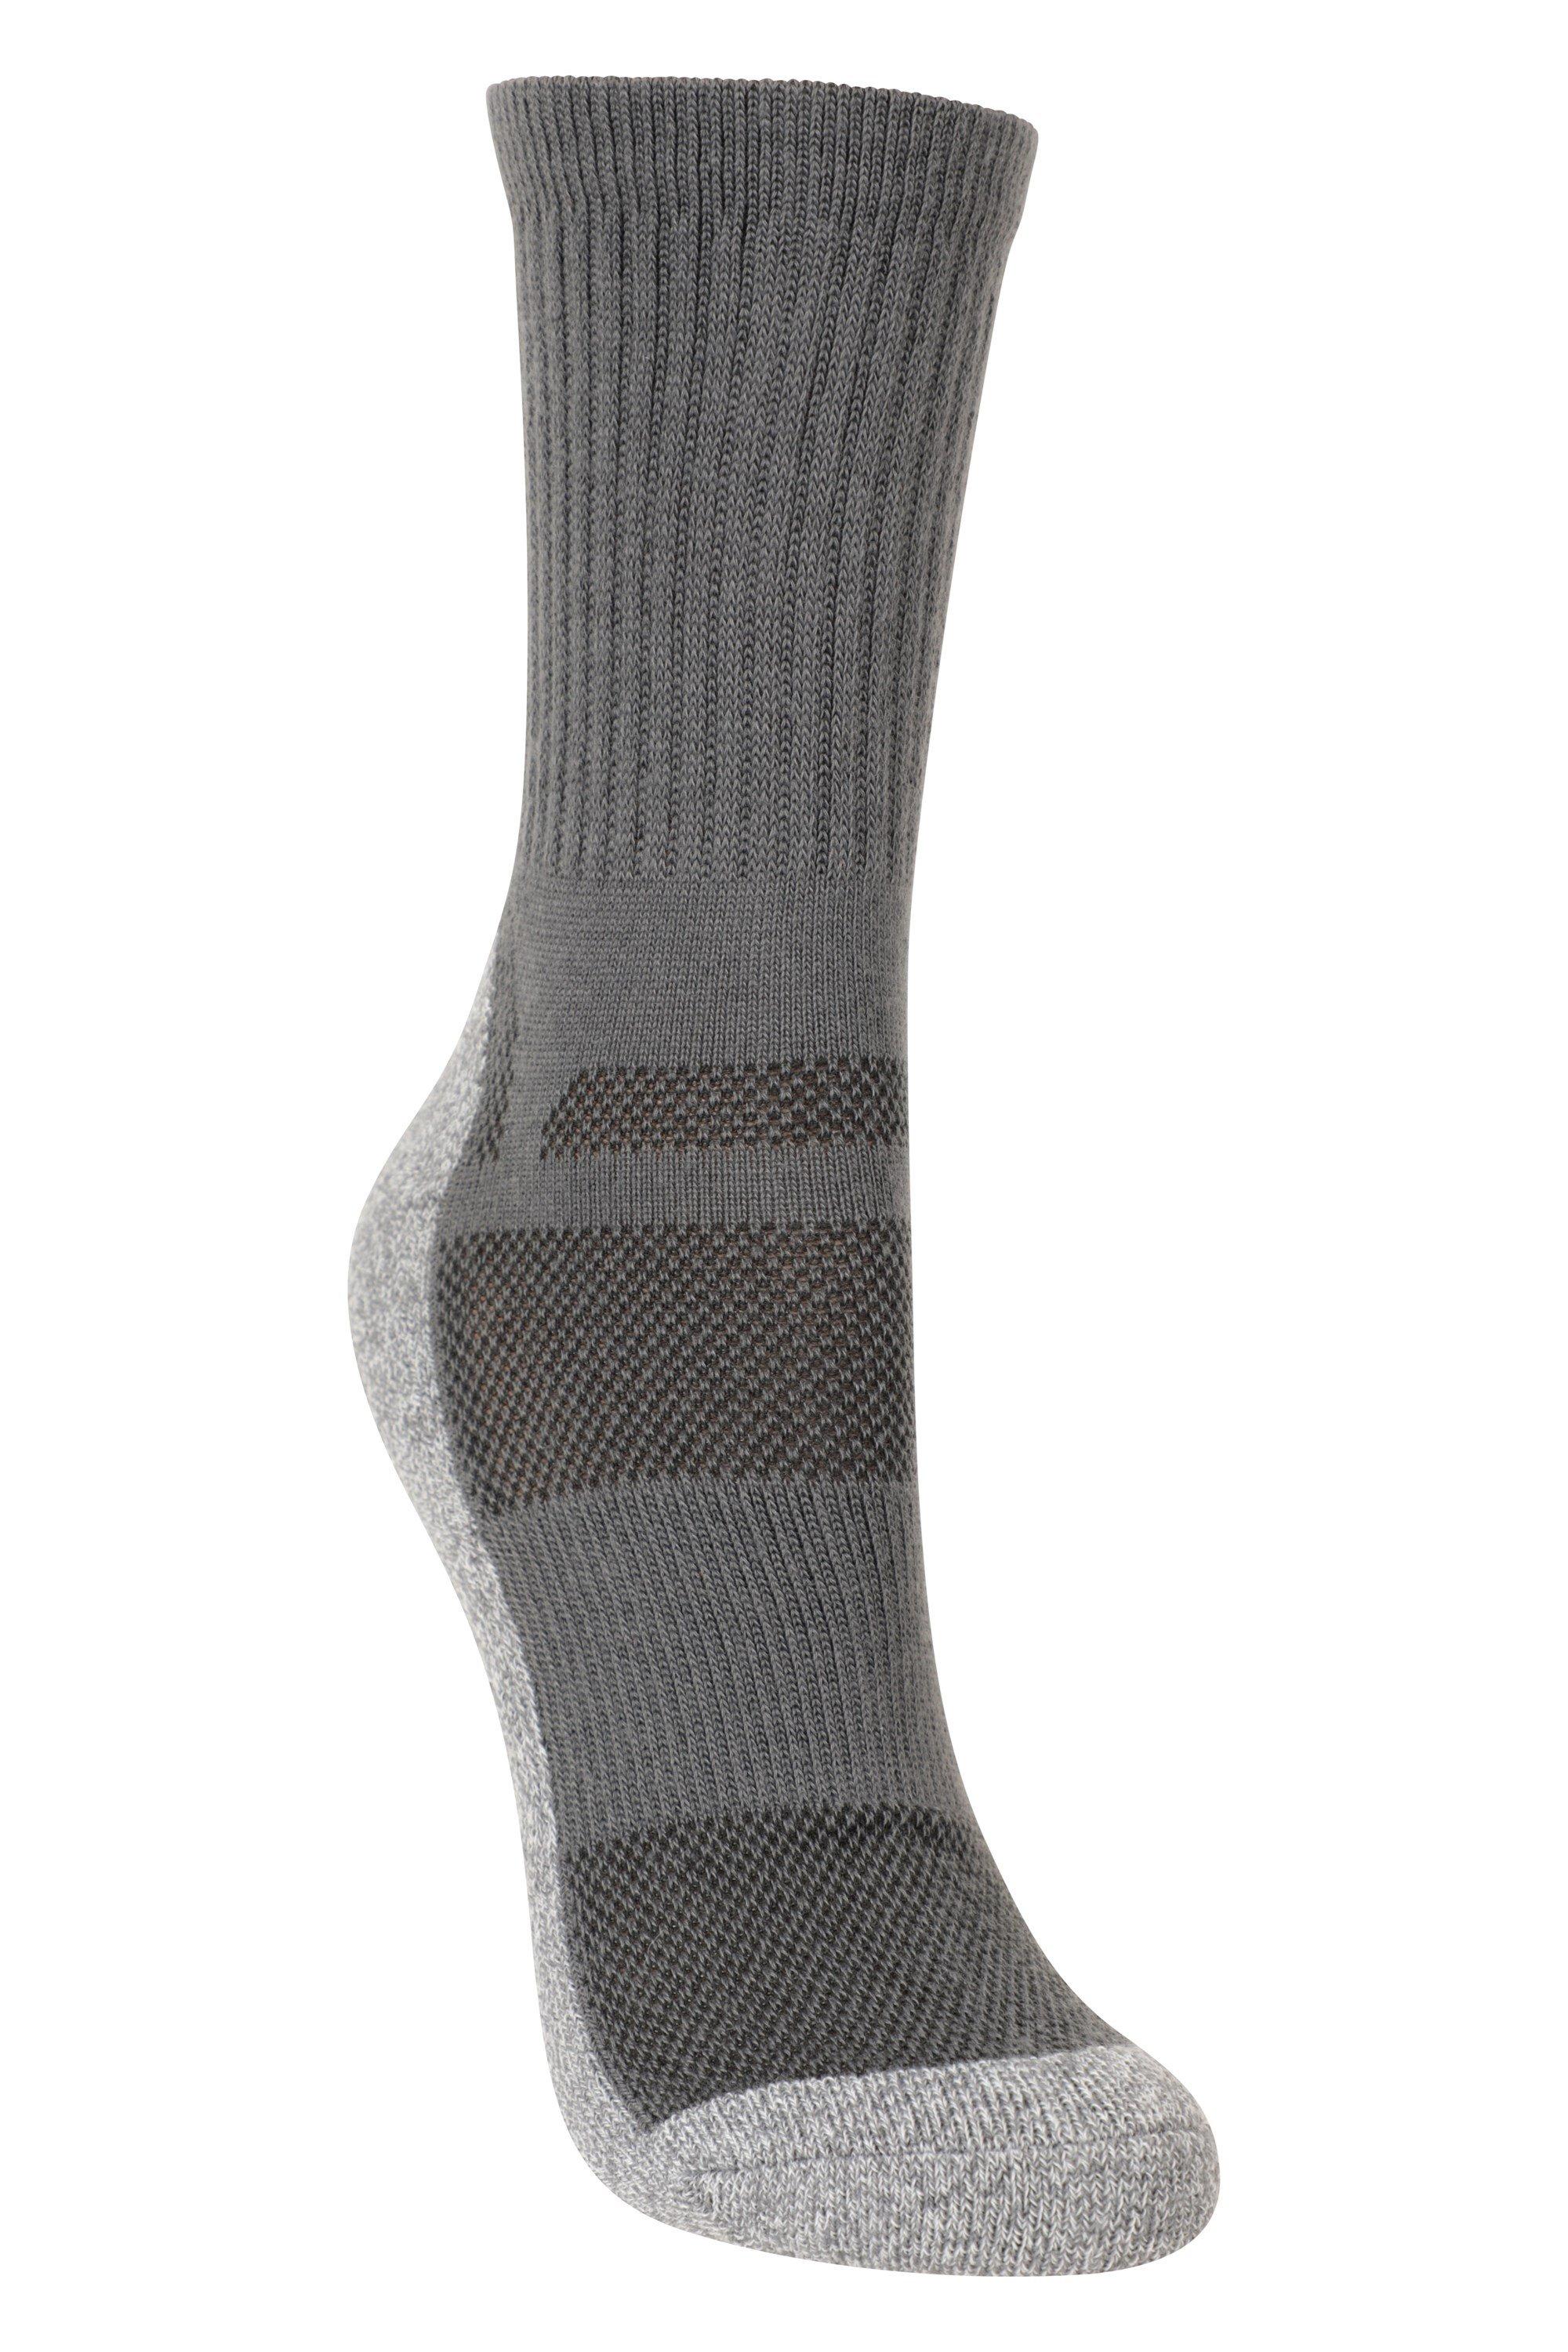 IsoCool  Trekker Sock Lightweight Durable  Socks